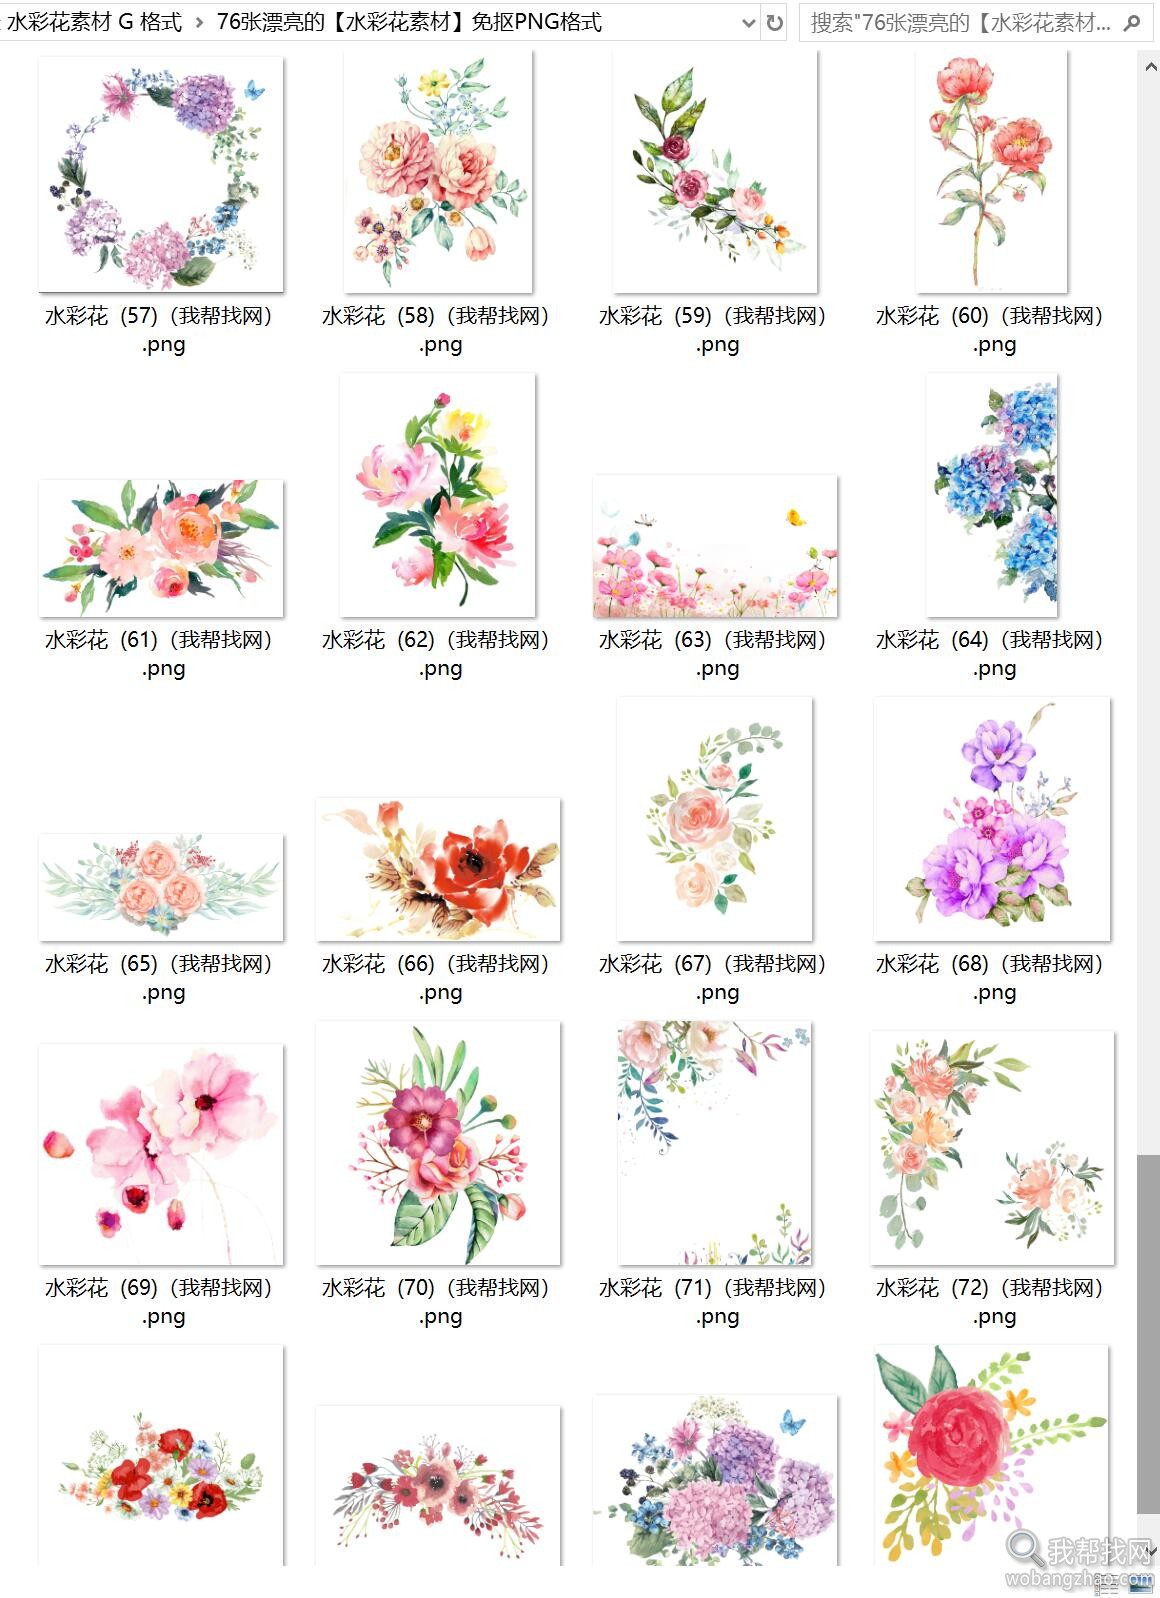 76张漂亮的水彩花素材 (4).jpg